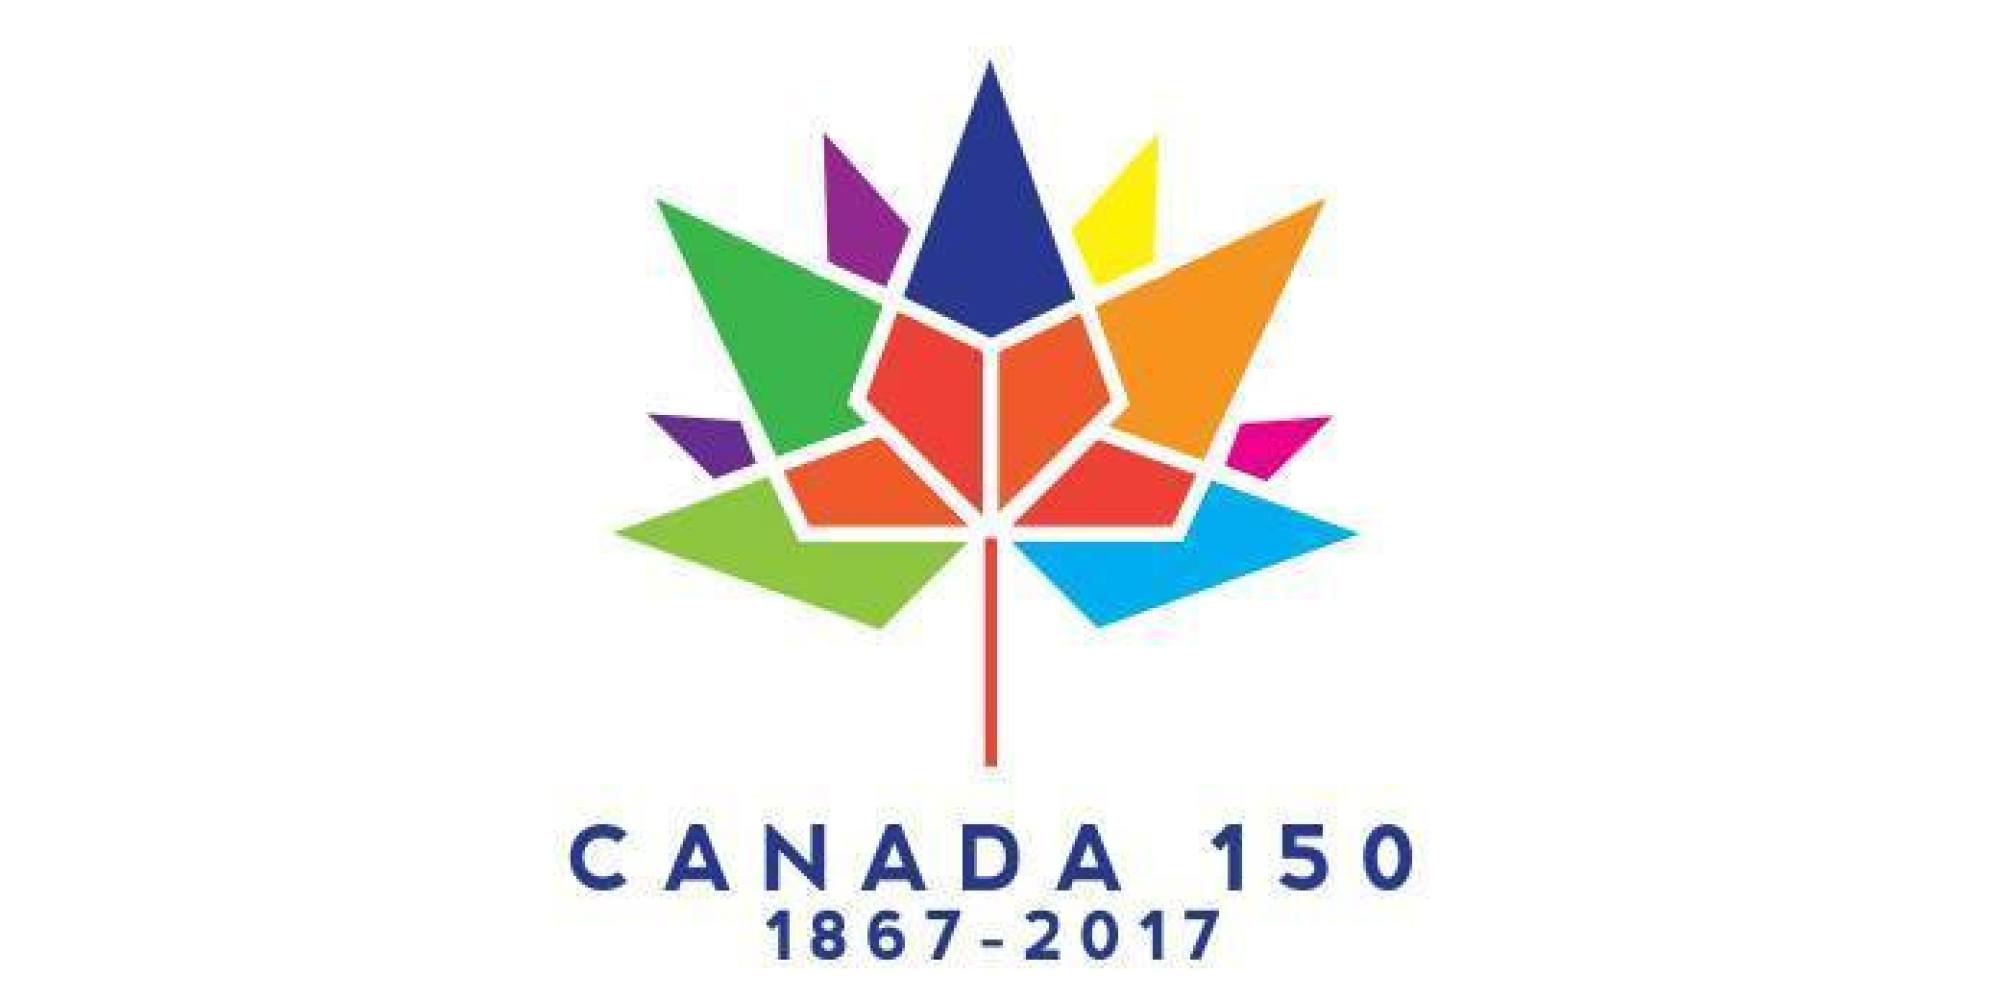 Estiman costo de celebraciones e infrastructura por los 150 años de Canadá en $500 millones